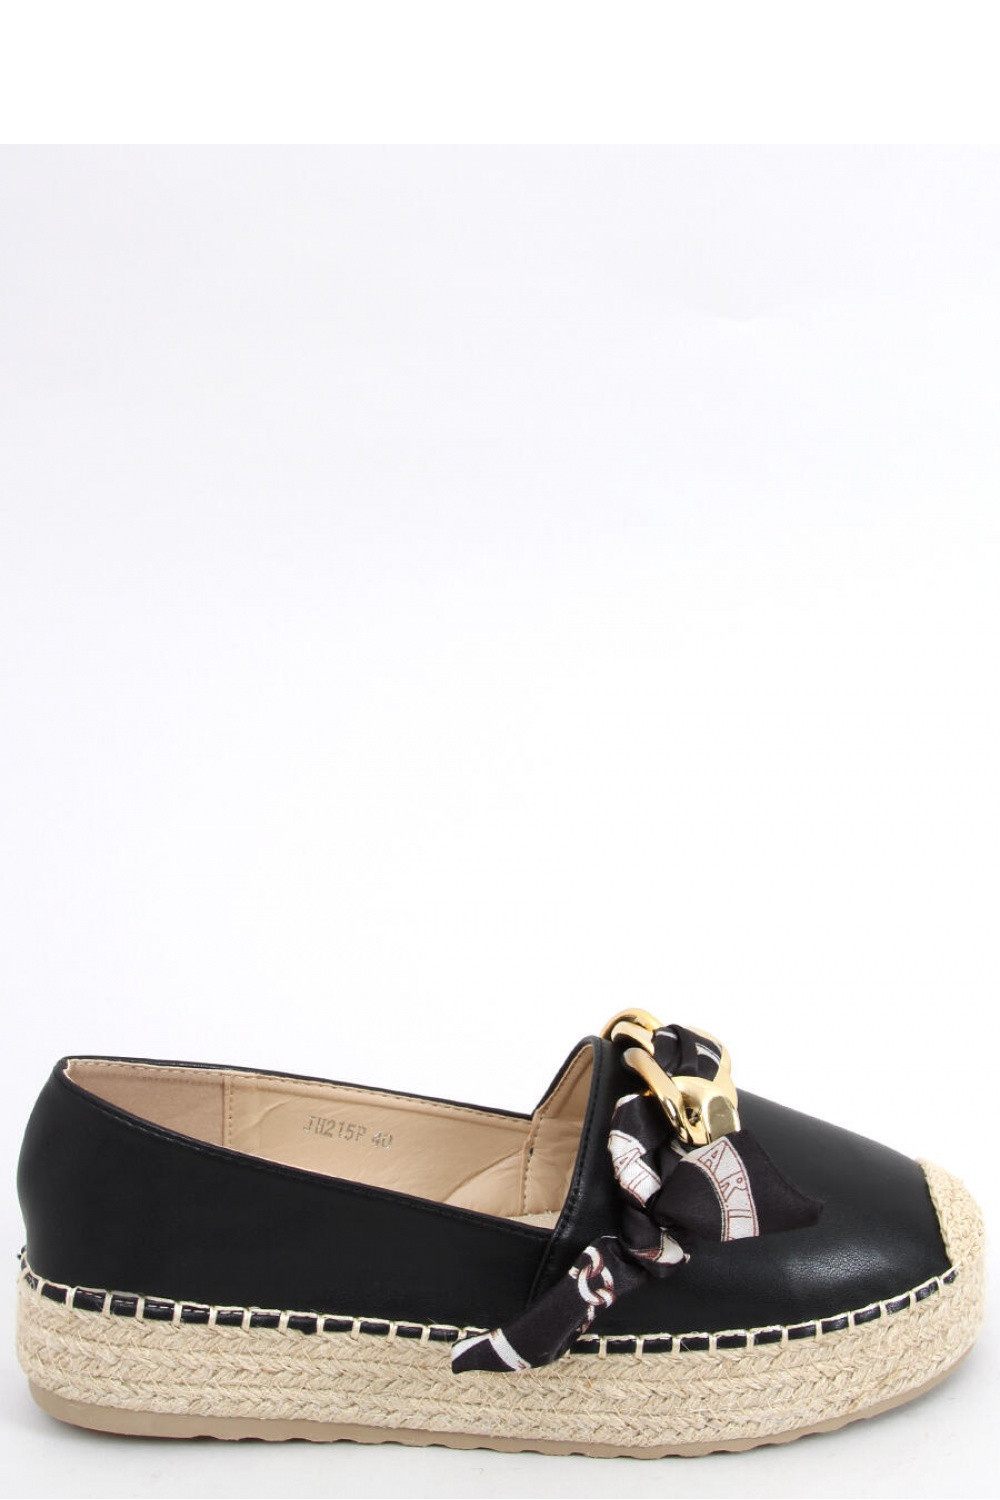 Dámské boty Espadrilky model 17351851 39 černá se zlatou - Inello